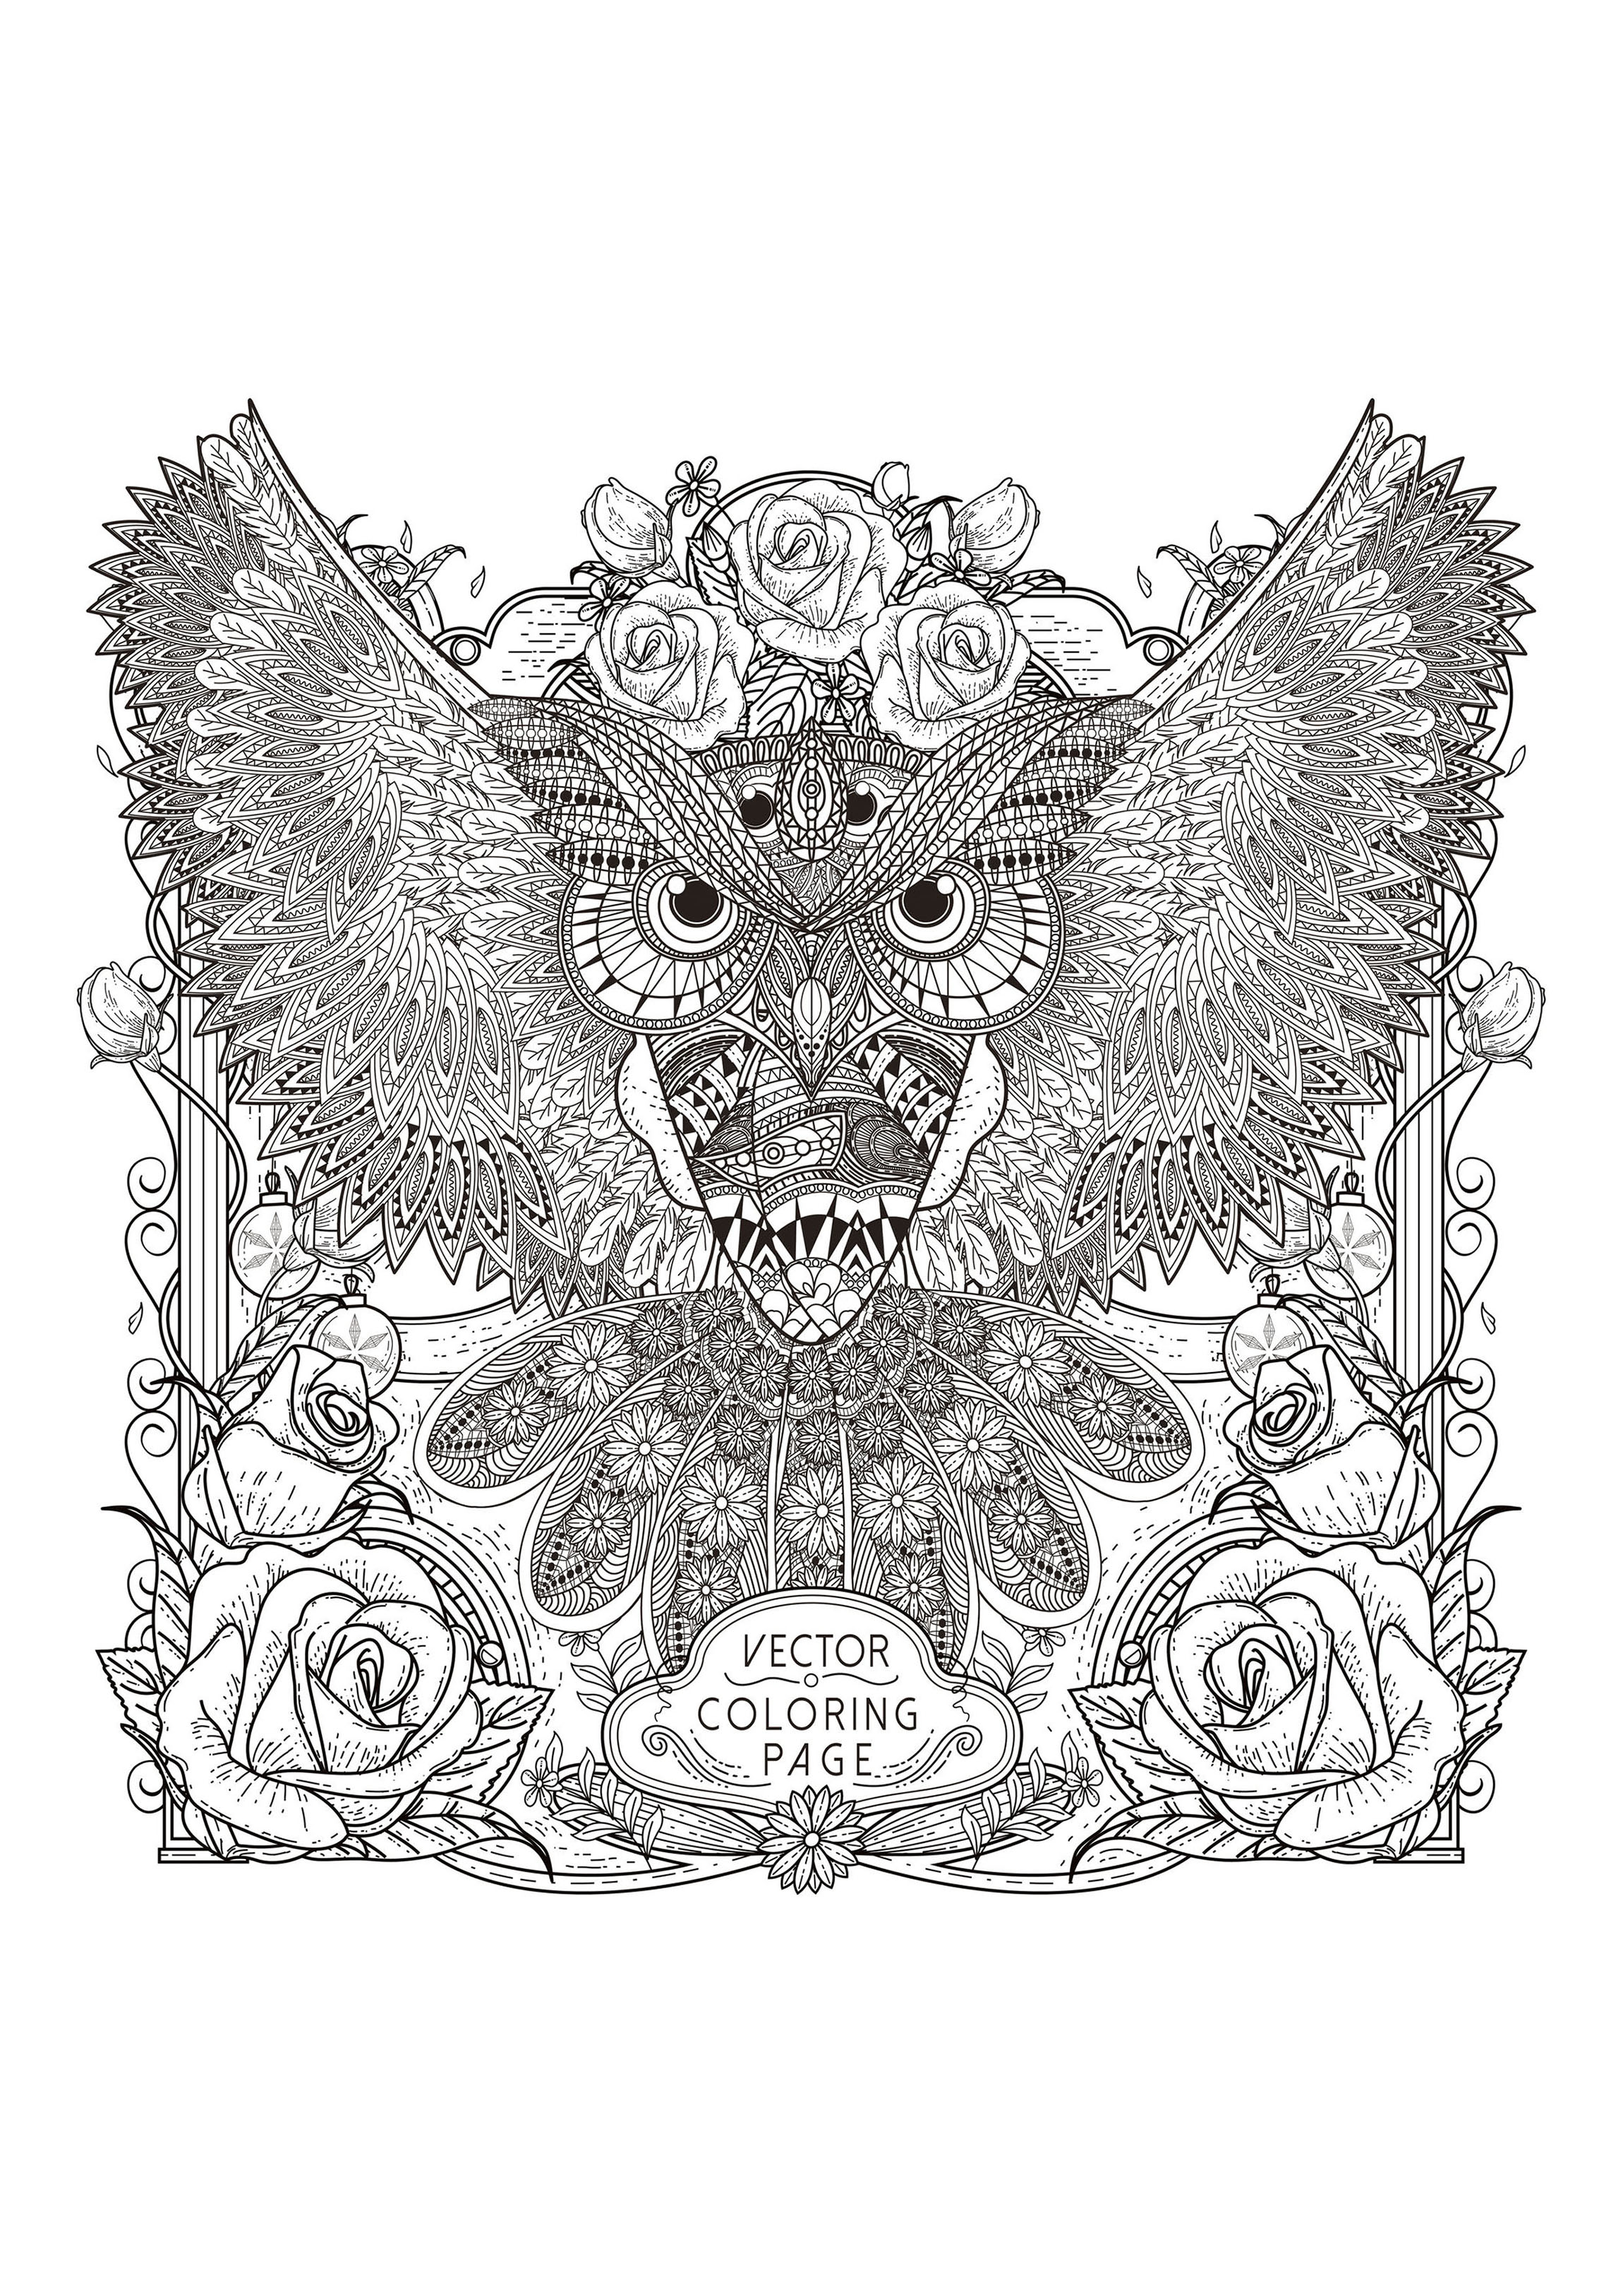 Owl with complex patterns, Artist : Kchung